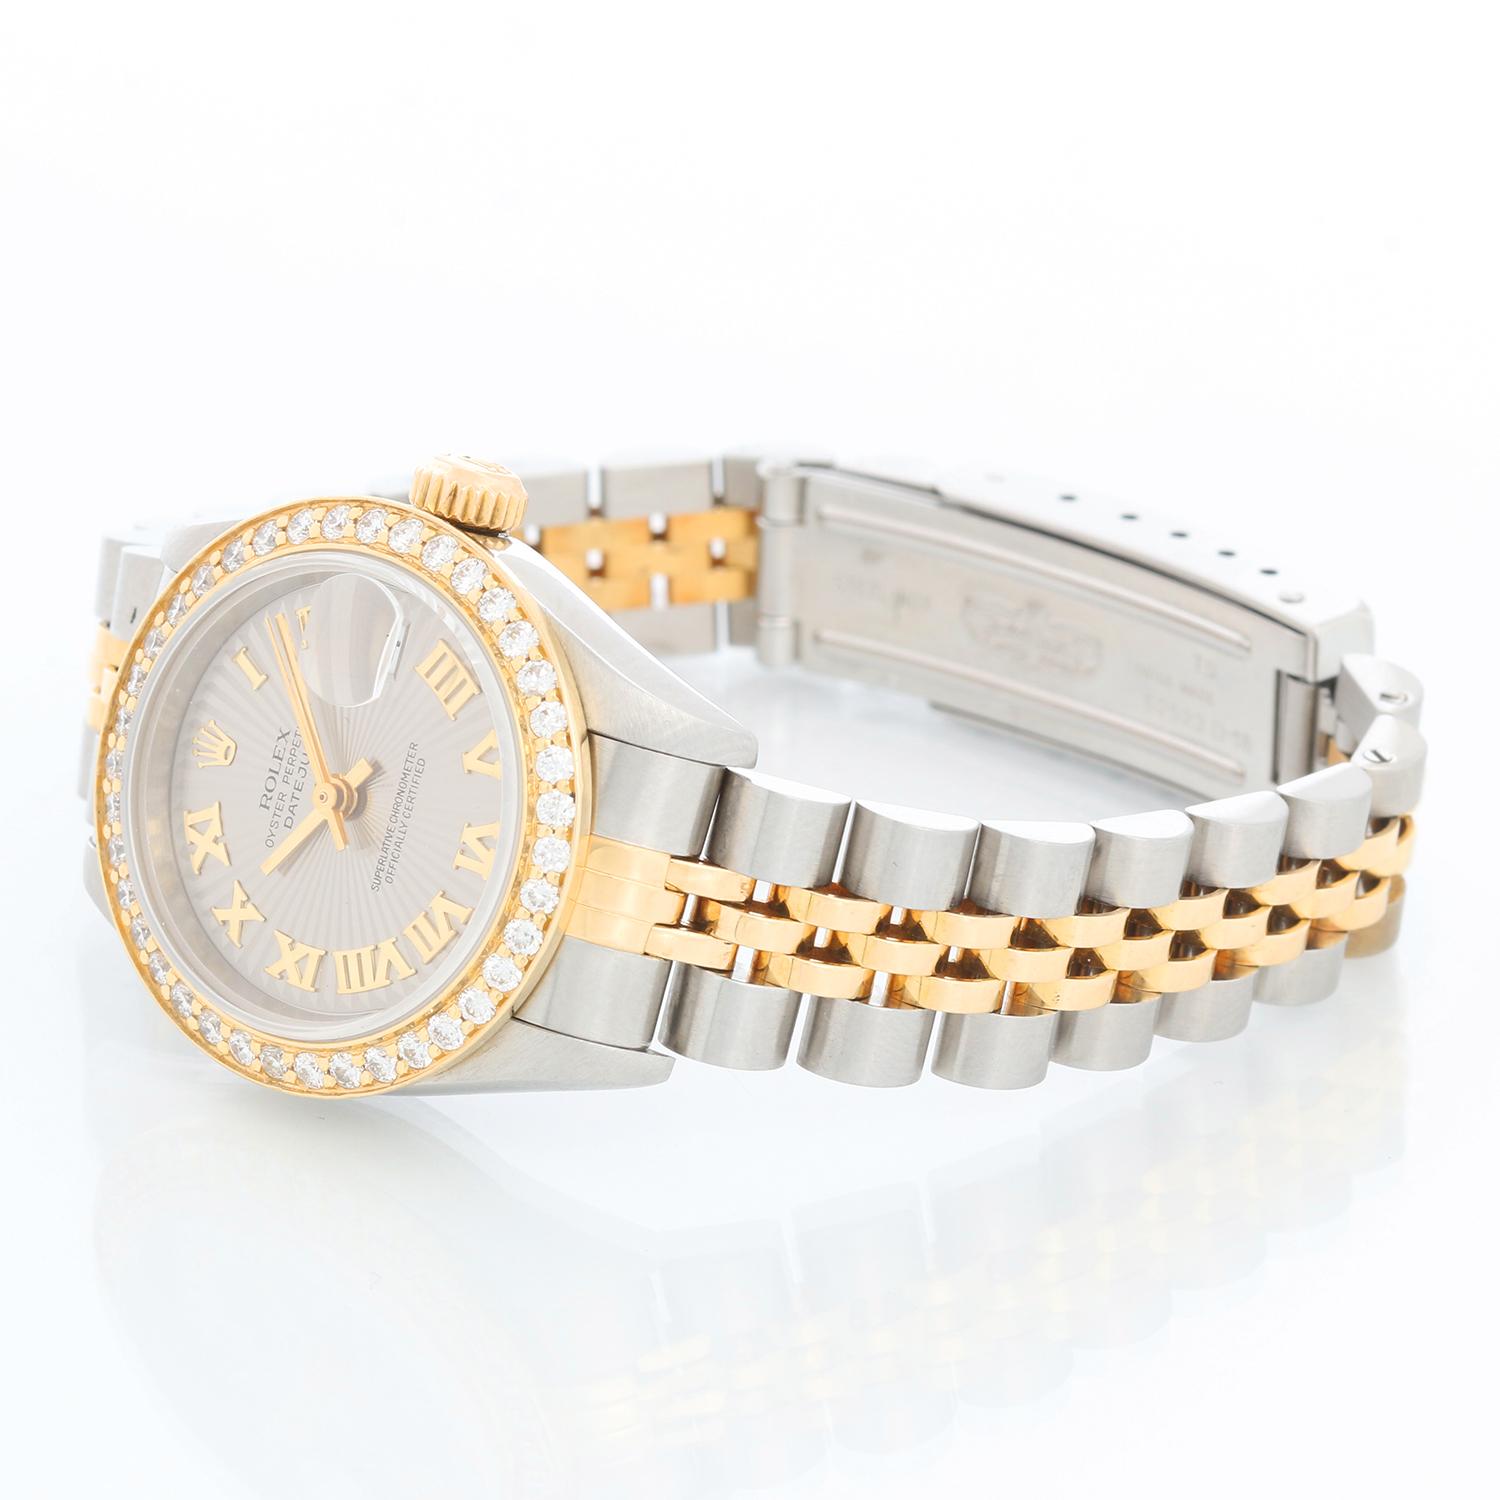 Rolex  Datejust 2-tone Steel & Gold Ladies Watch 79173 - Remontage automatique, 29 rubis, date Quickset, verre saphir. Boîtier en acier inoxydable avec lunette en diamant personnalisée  (26 mm de diamètre). Cadran gris ardoise avec chiffres romains